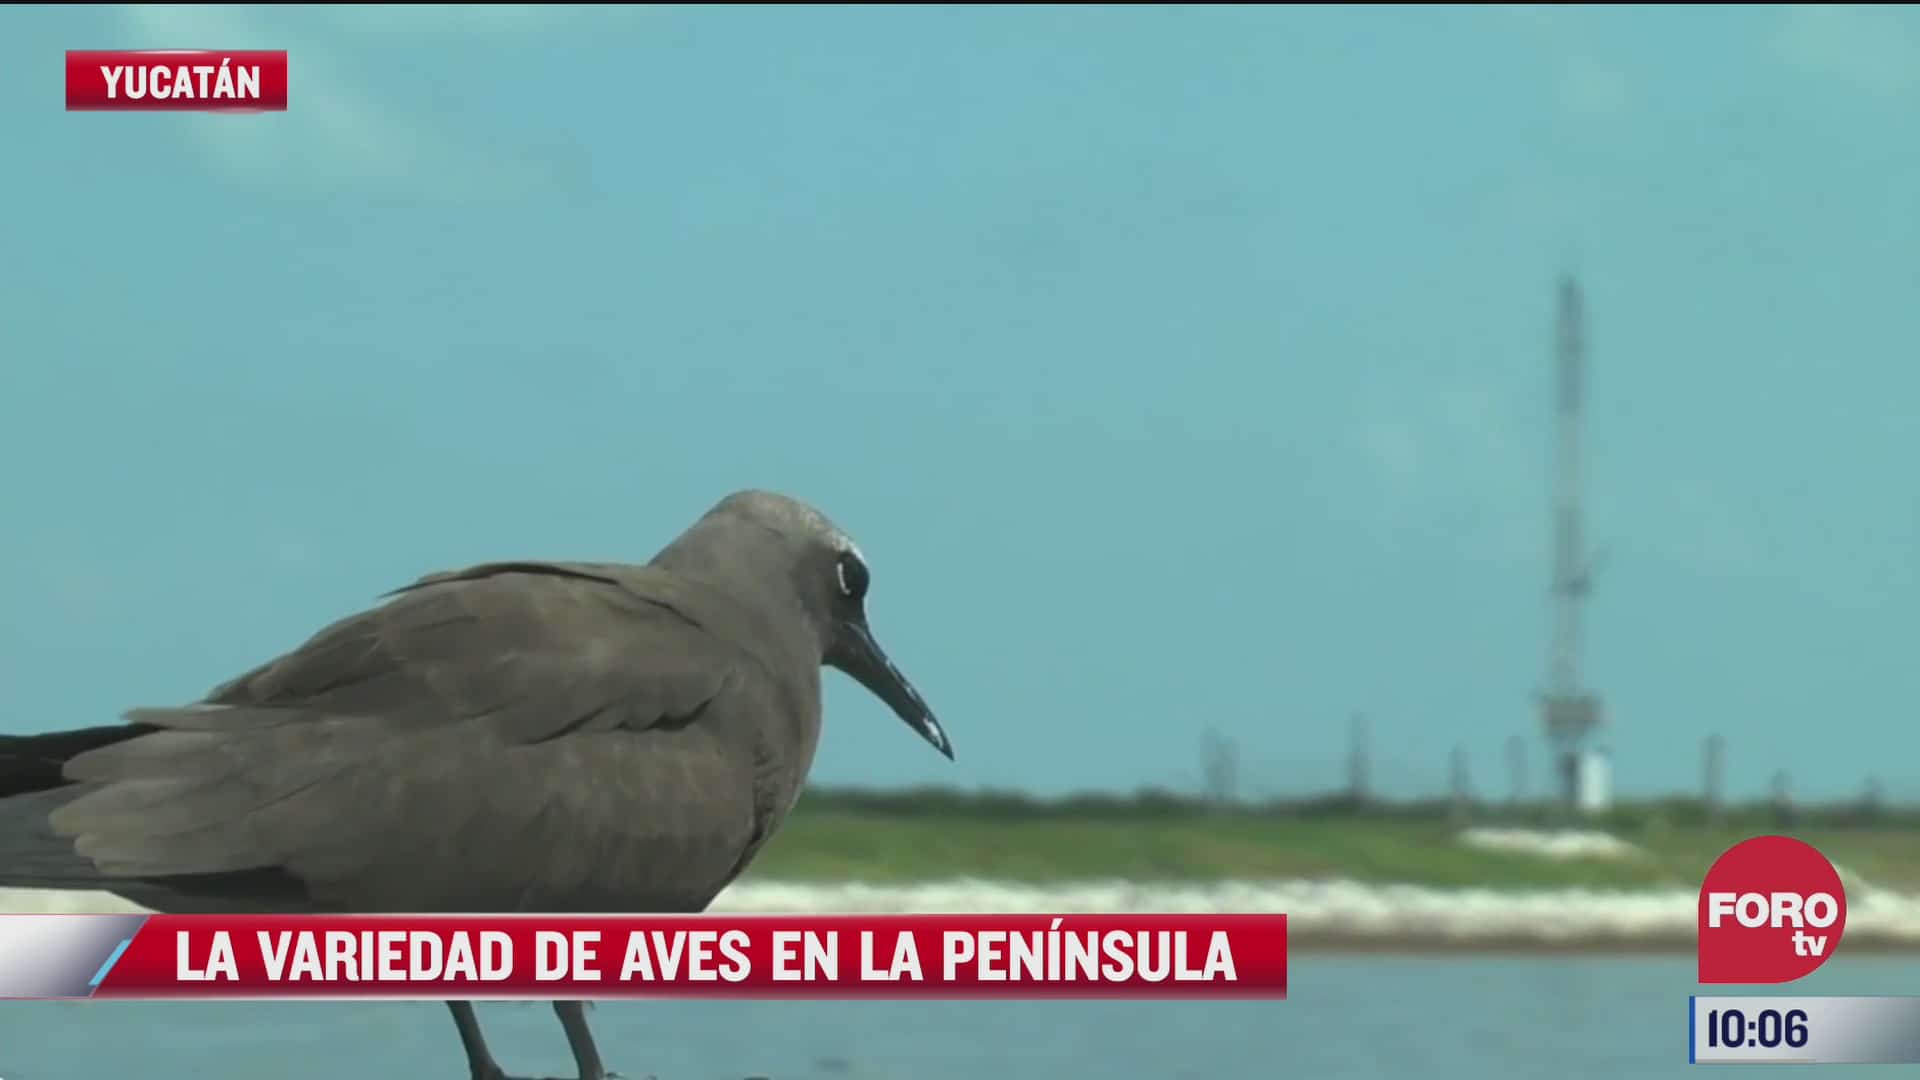 la variedad de aves en la peninsula de yucatan